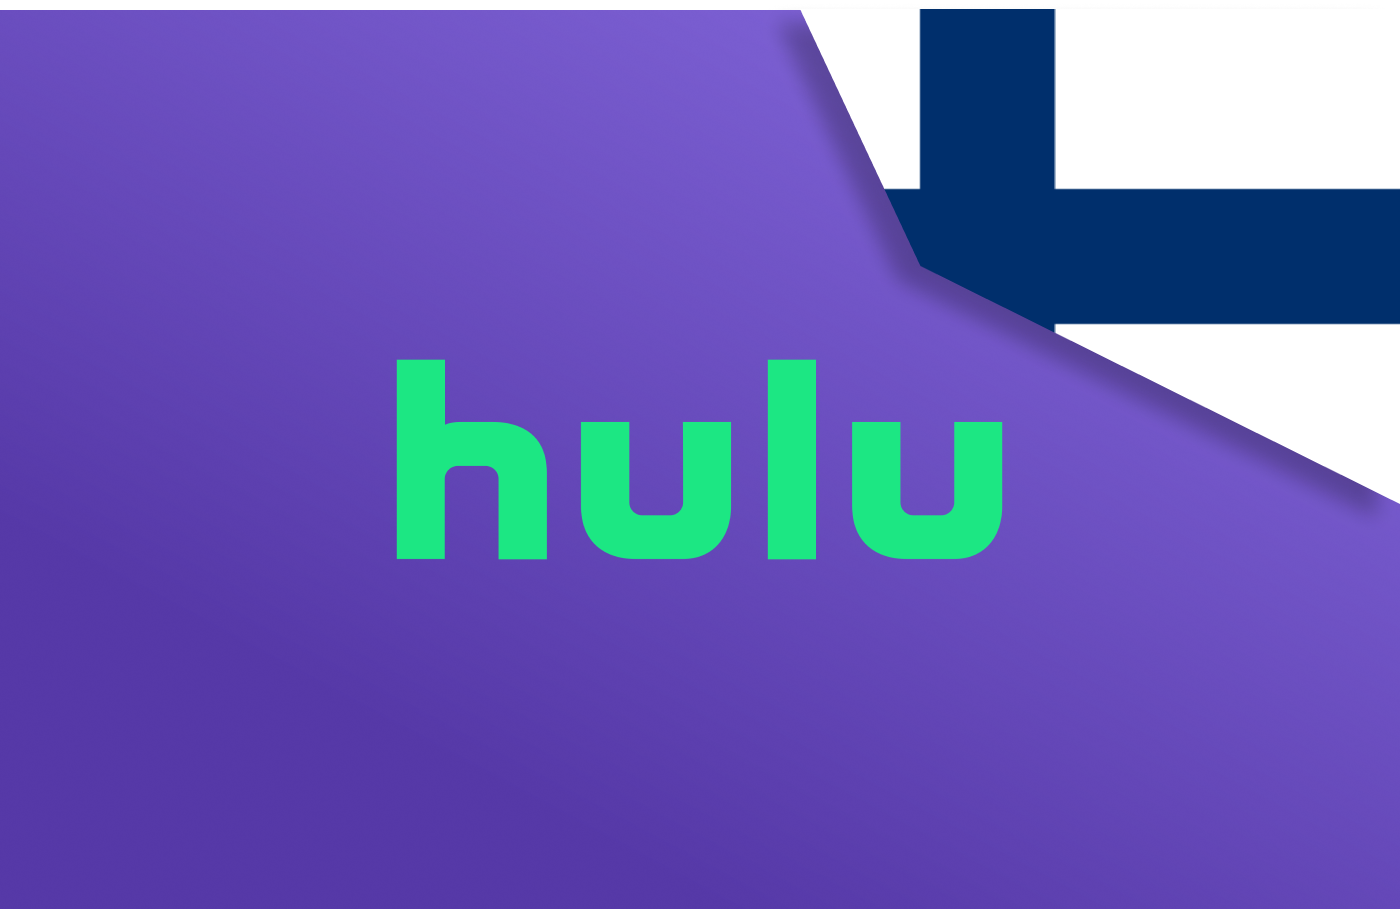 Watch Hulu in Finland